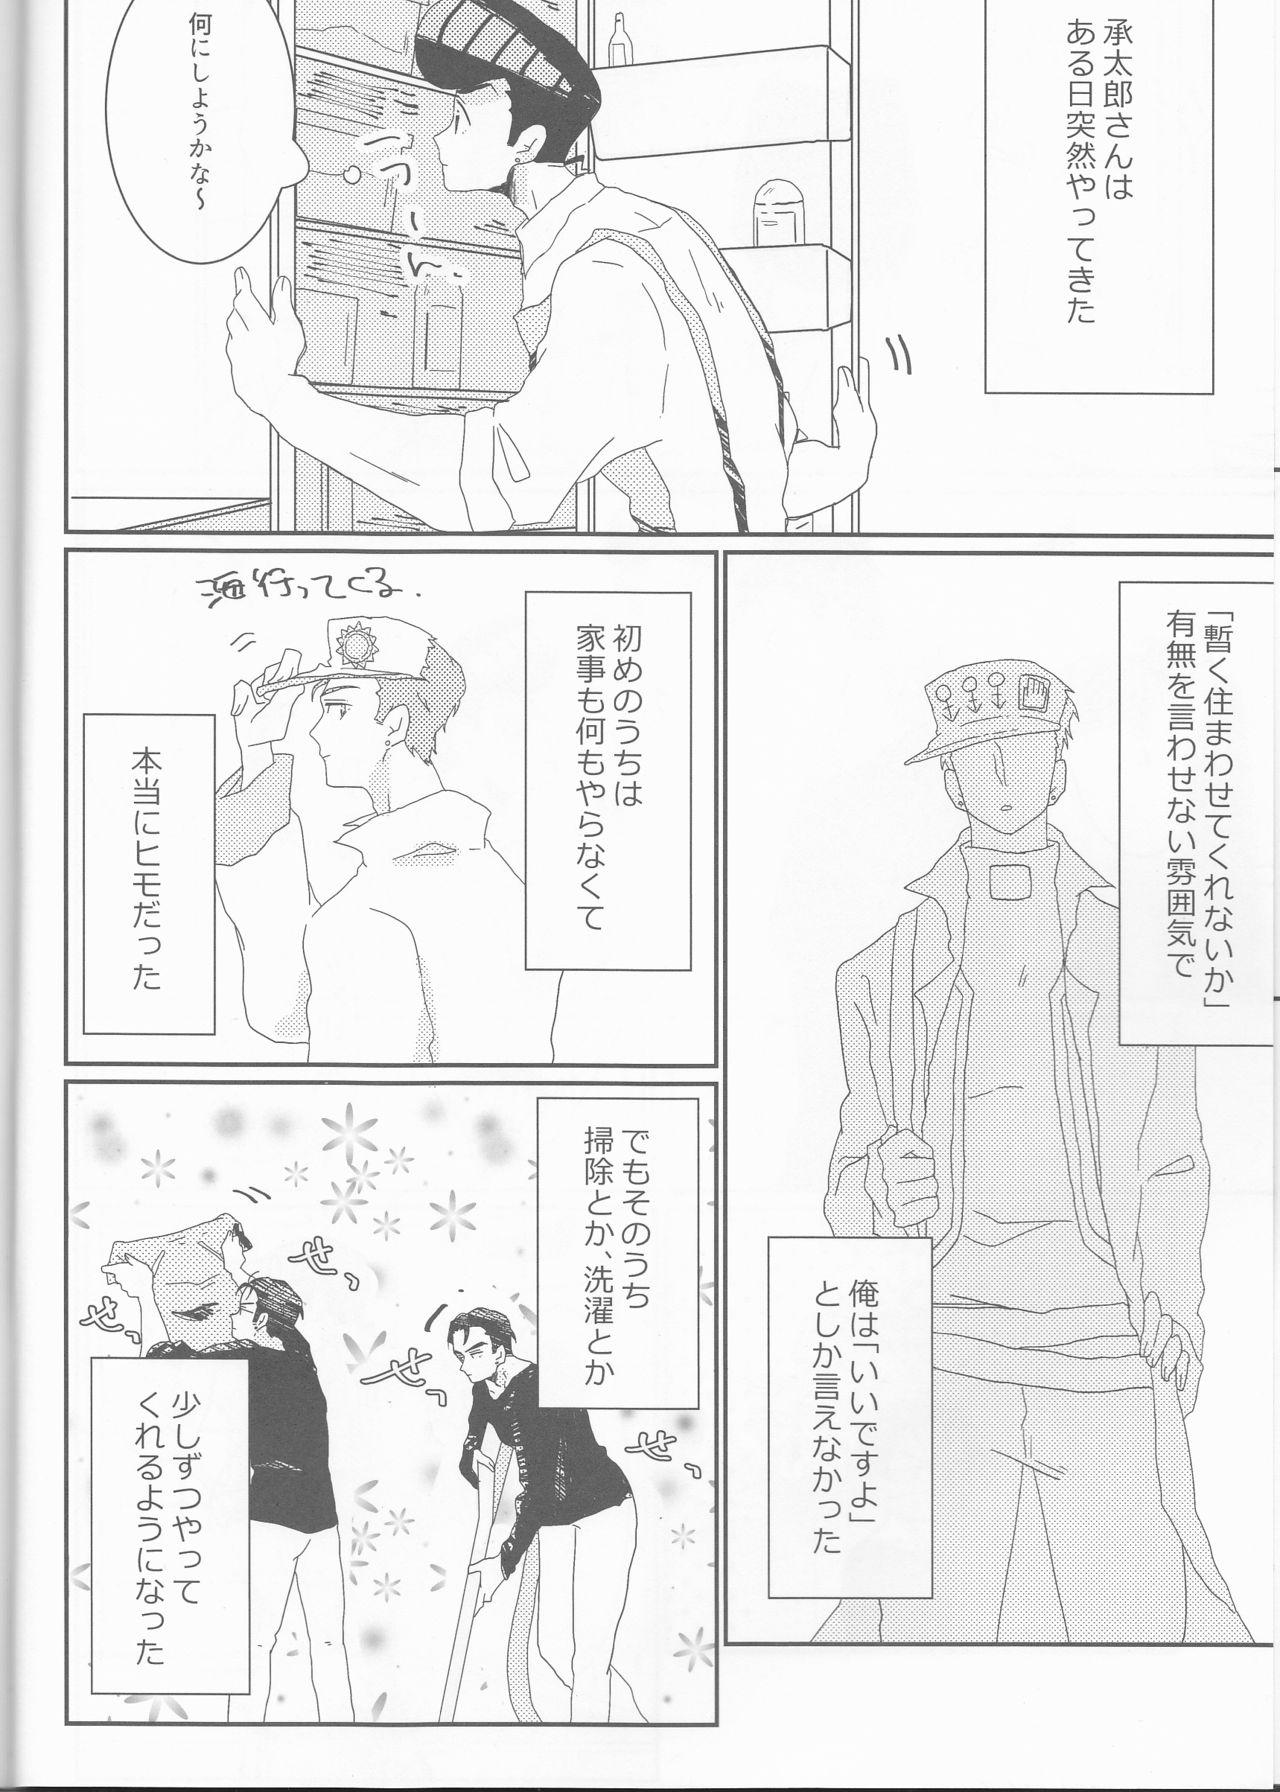 Young (Golden Blood 19) [Snackgashi (Rikuna)] Josuke-kun-ka no himo Tarou-san (Jojo's Bizarre Adventure) - Jojos bizarre adventure Danish - Page 5